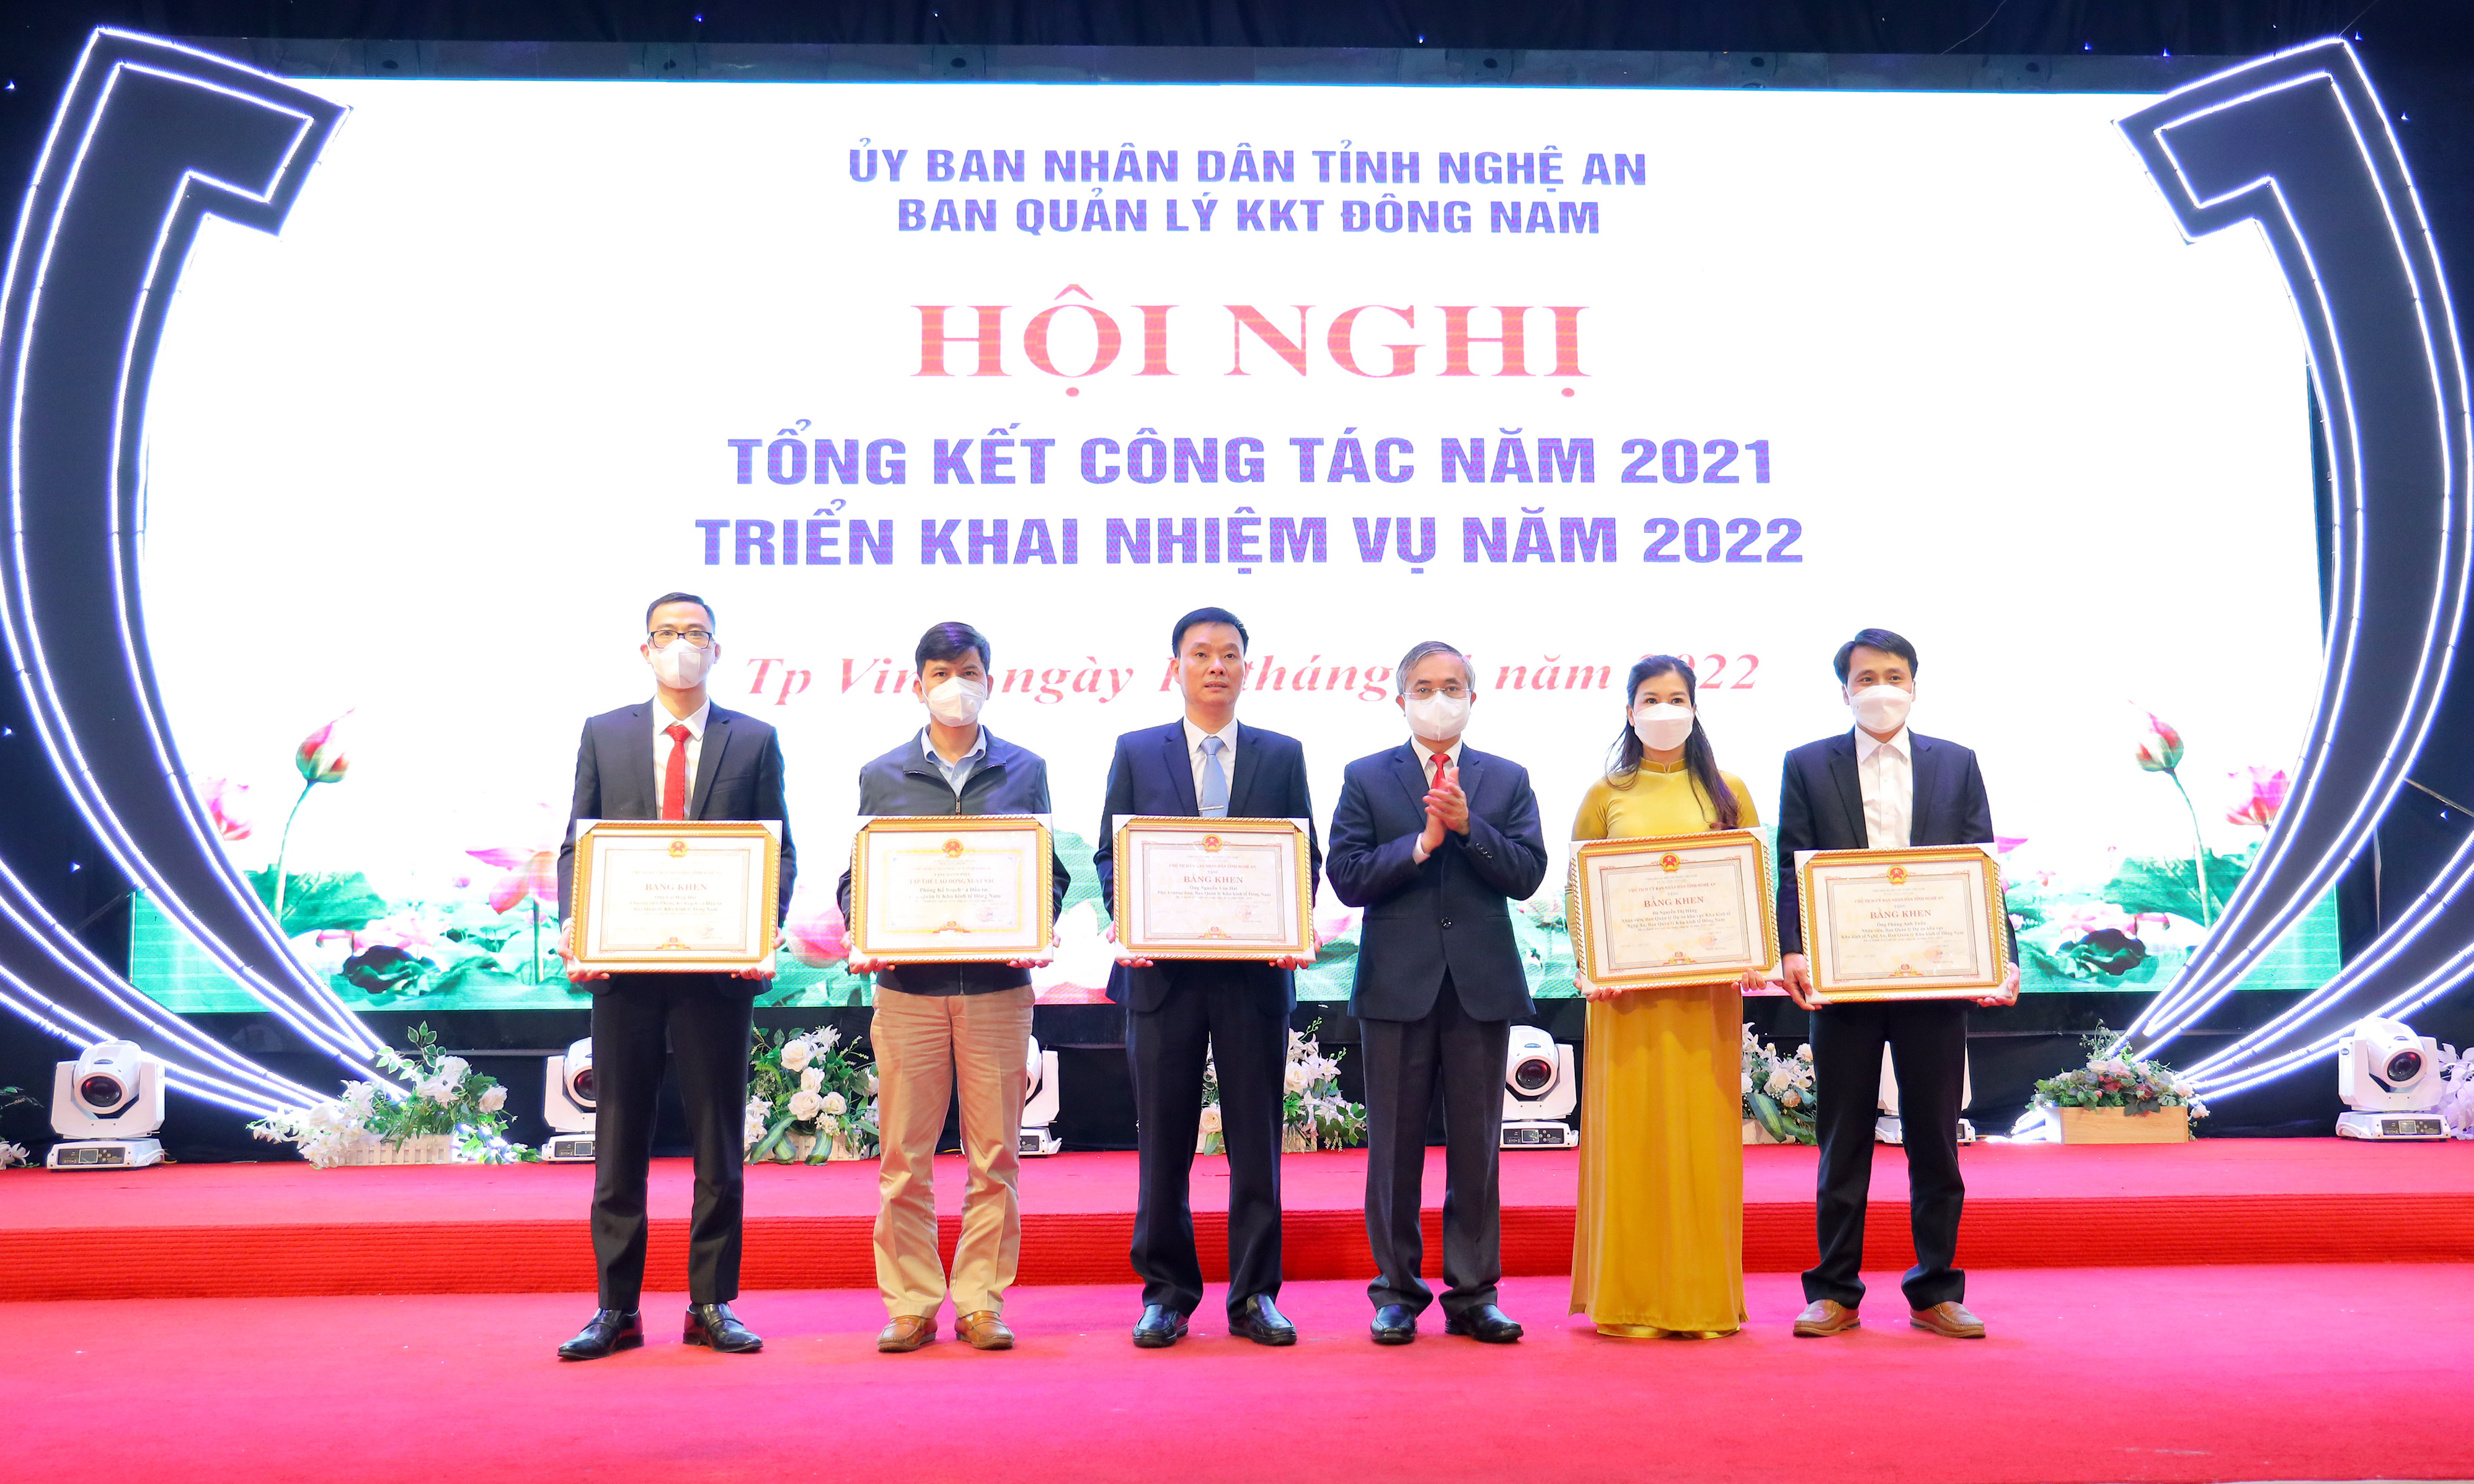 UBND tỉnh tặng Bằng Khen cho 1 tập thể và 4 cá nhân của Ban quản lý KKT Đông Nam có nhiều thành tích xuất sắc trong năm 2021. Ảnh Nguyên Sơn